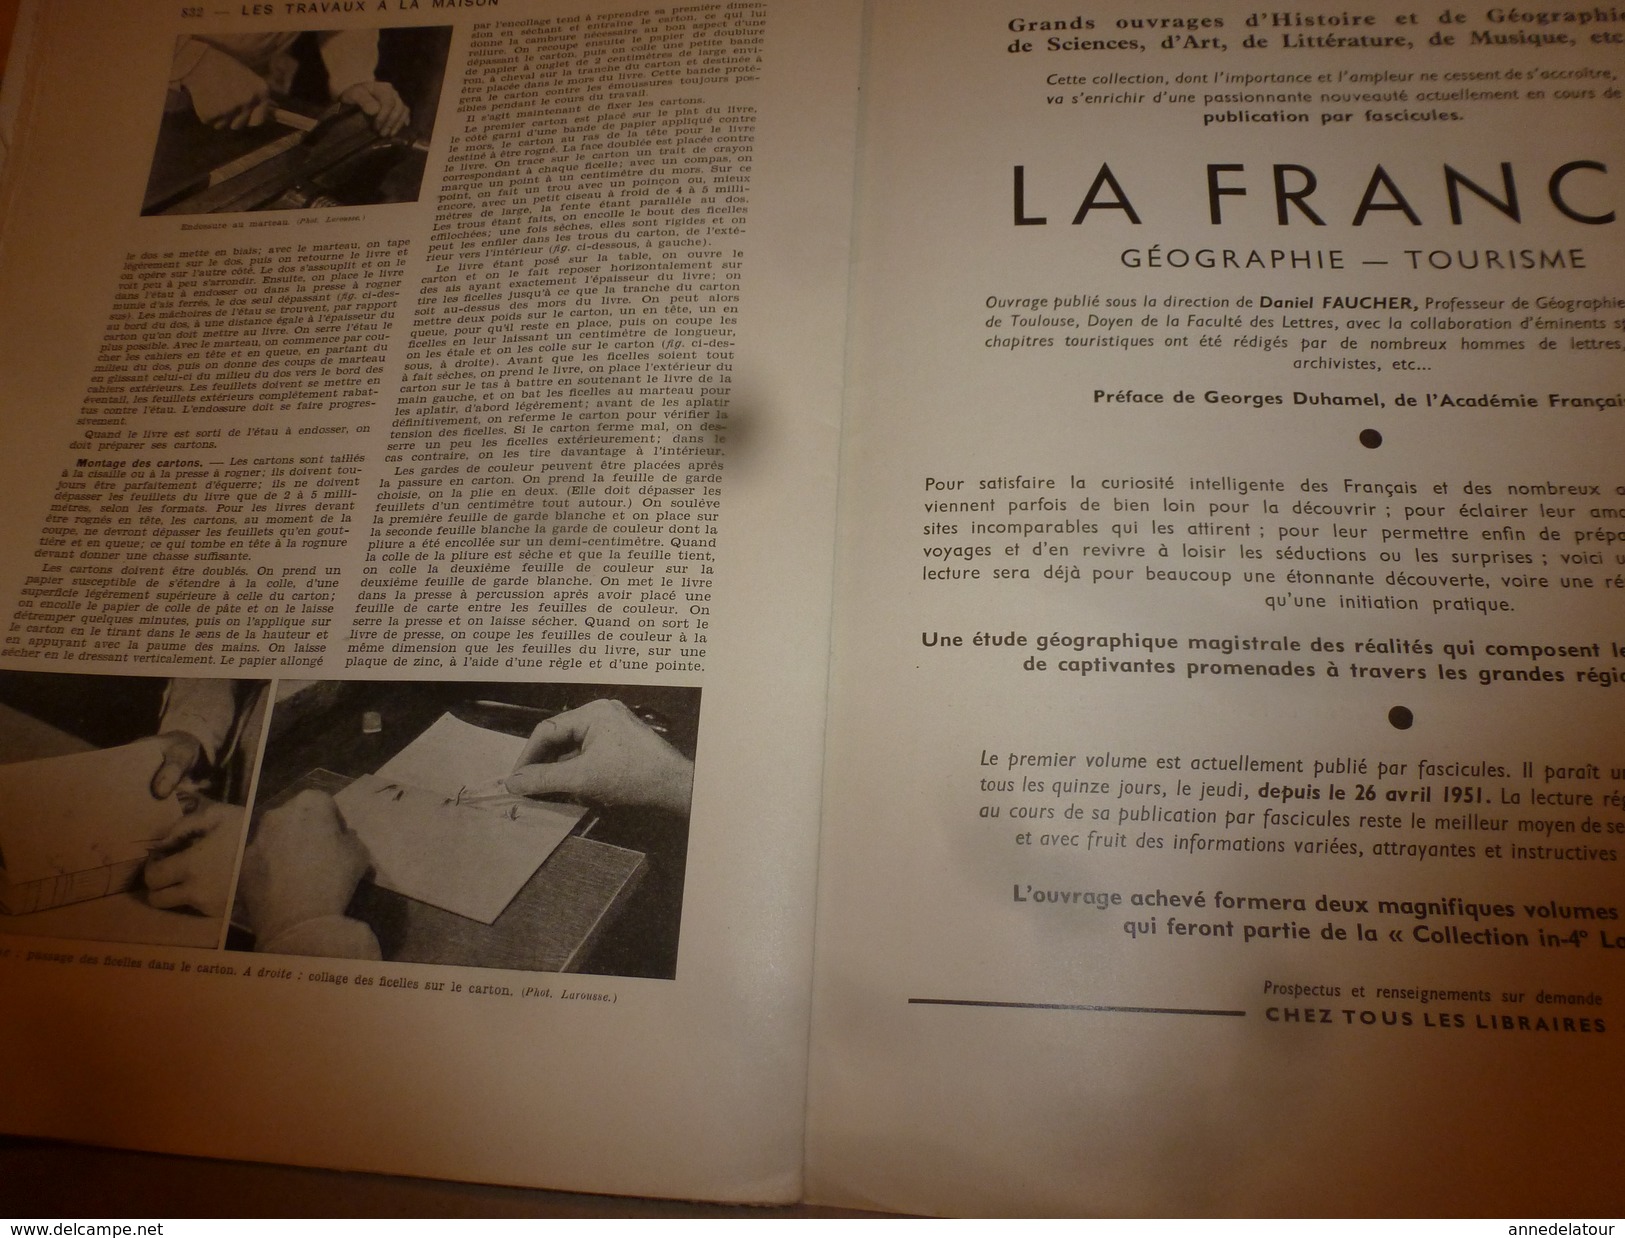 1950 ENCYCLOPEDIE FAMILIALE LAROUSSE ->Tapisserie,Broderie,Vitrail,Photographie,Cinématog,Encadrement,Cartonnage,Reliure